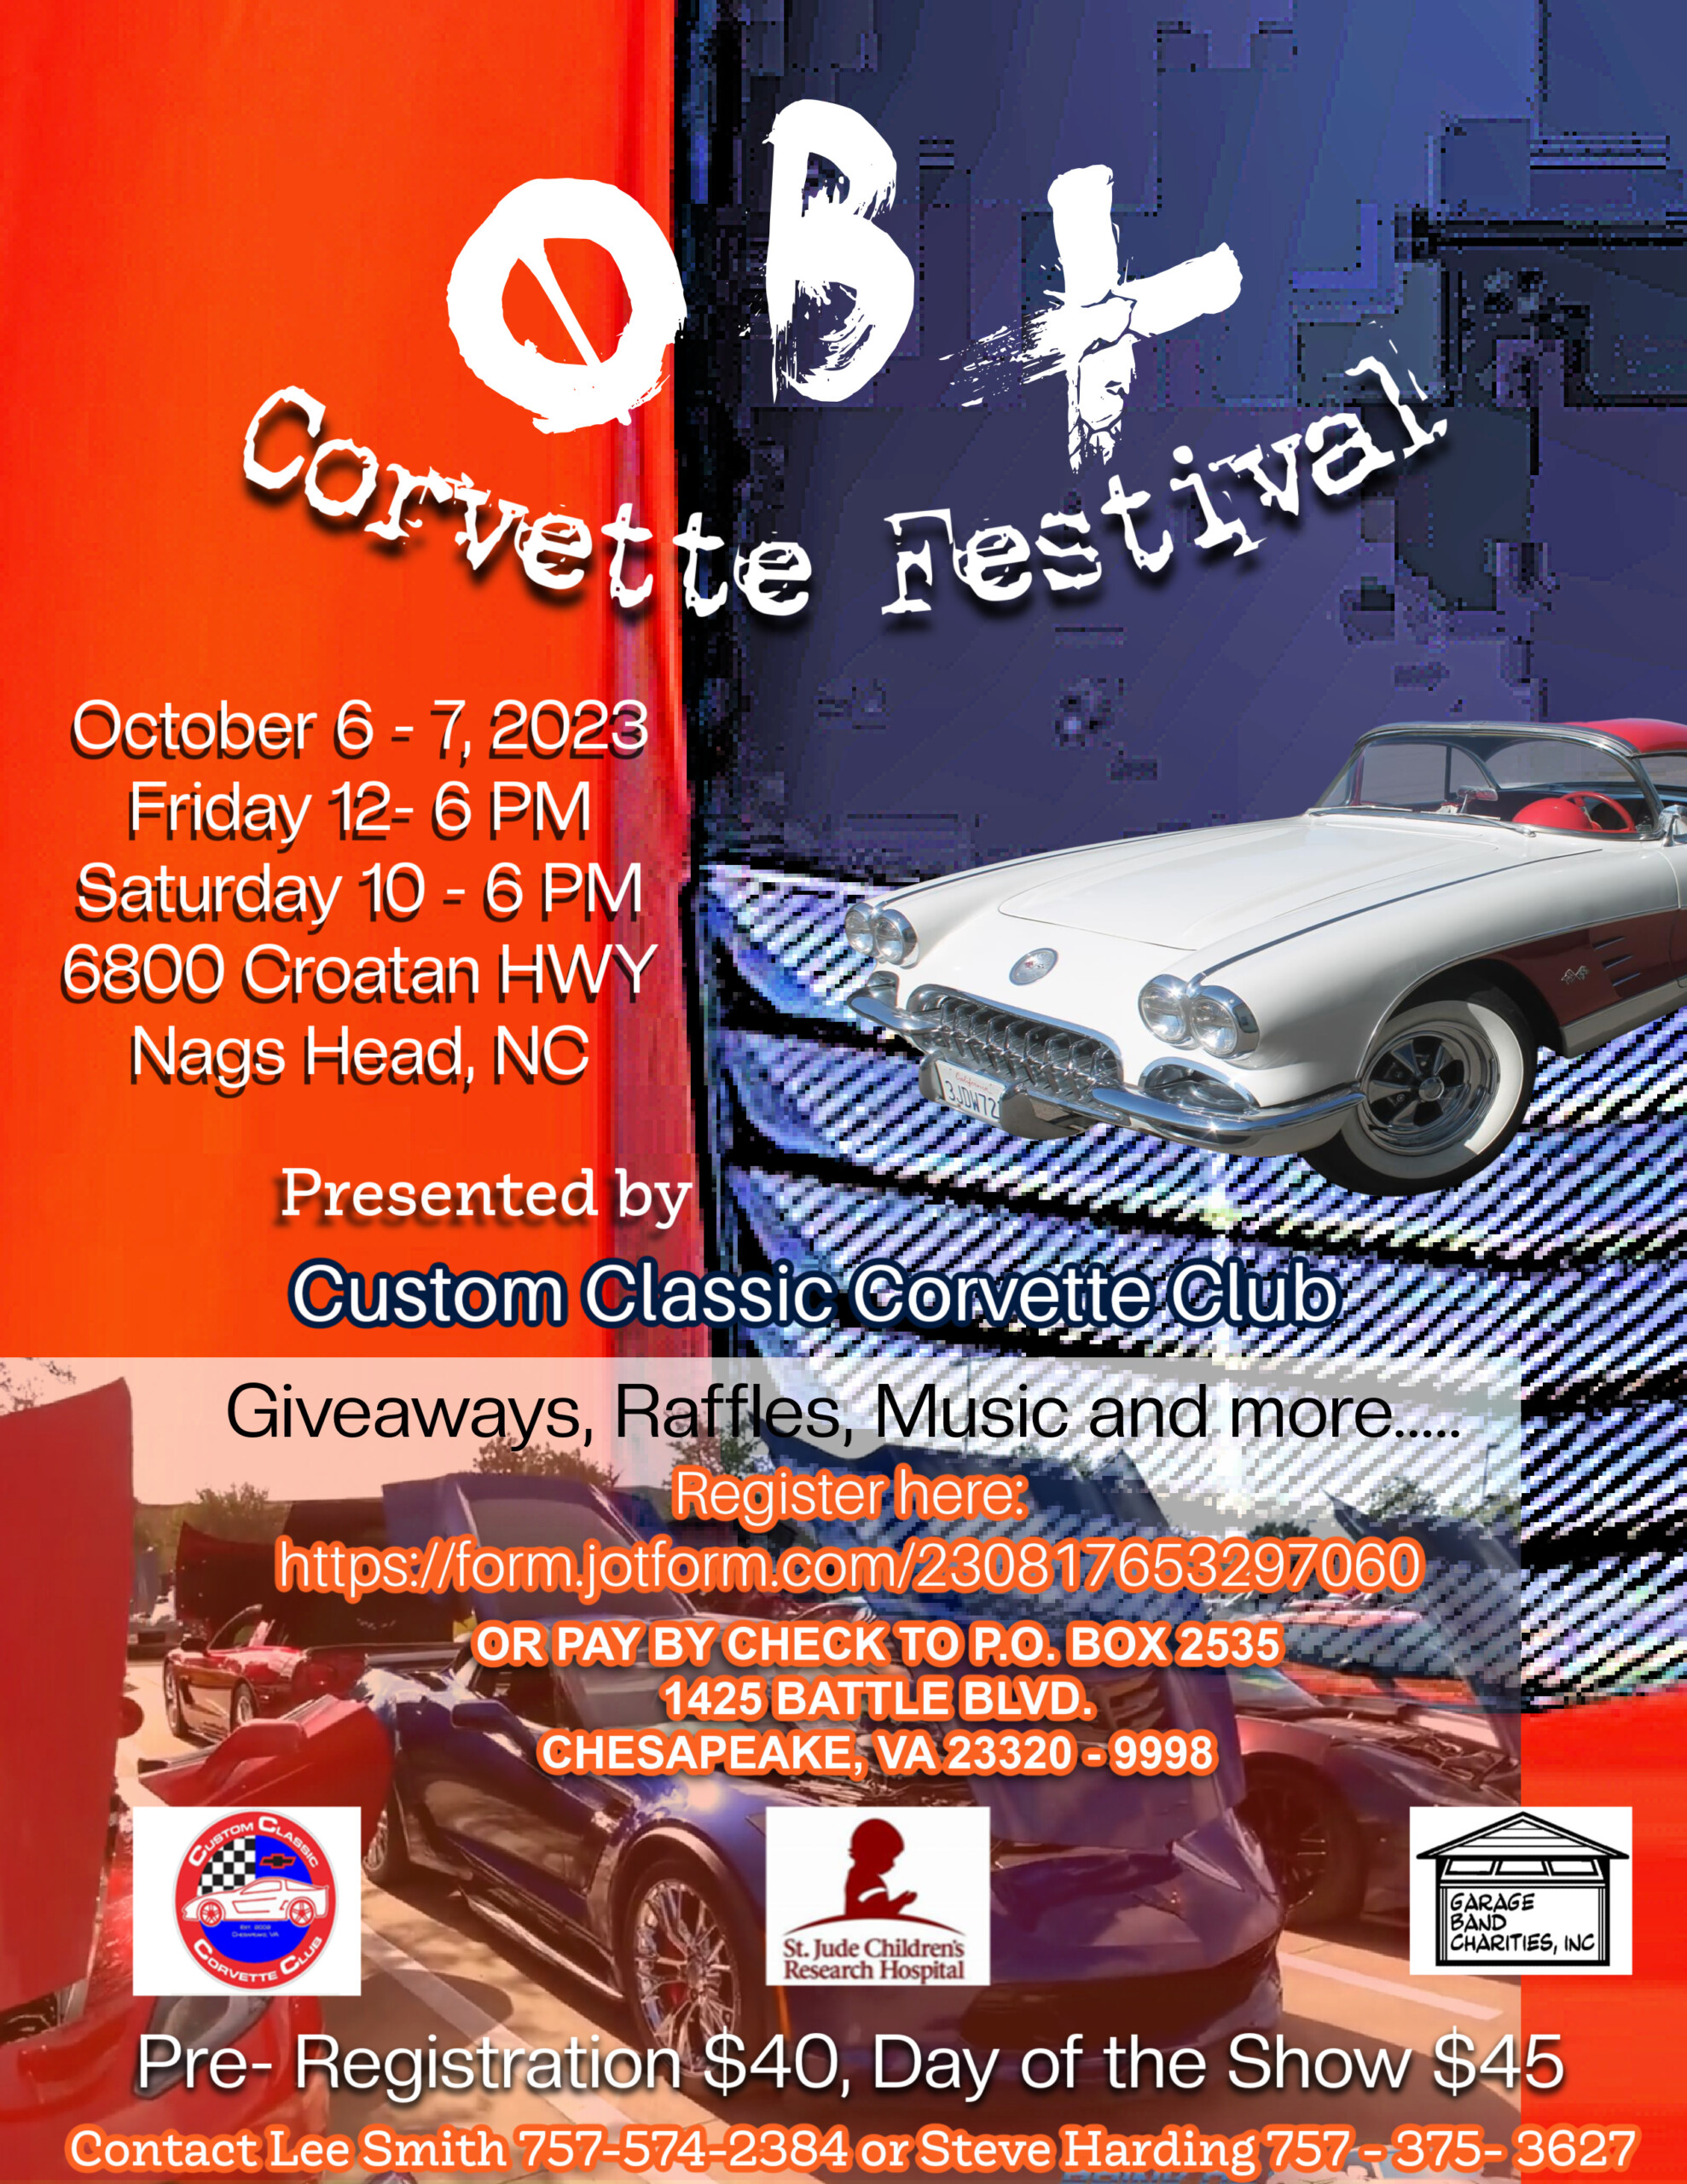 OBX Corvette Festival